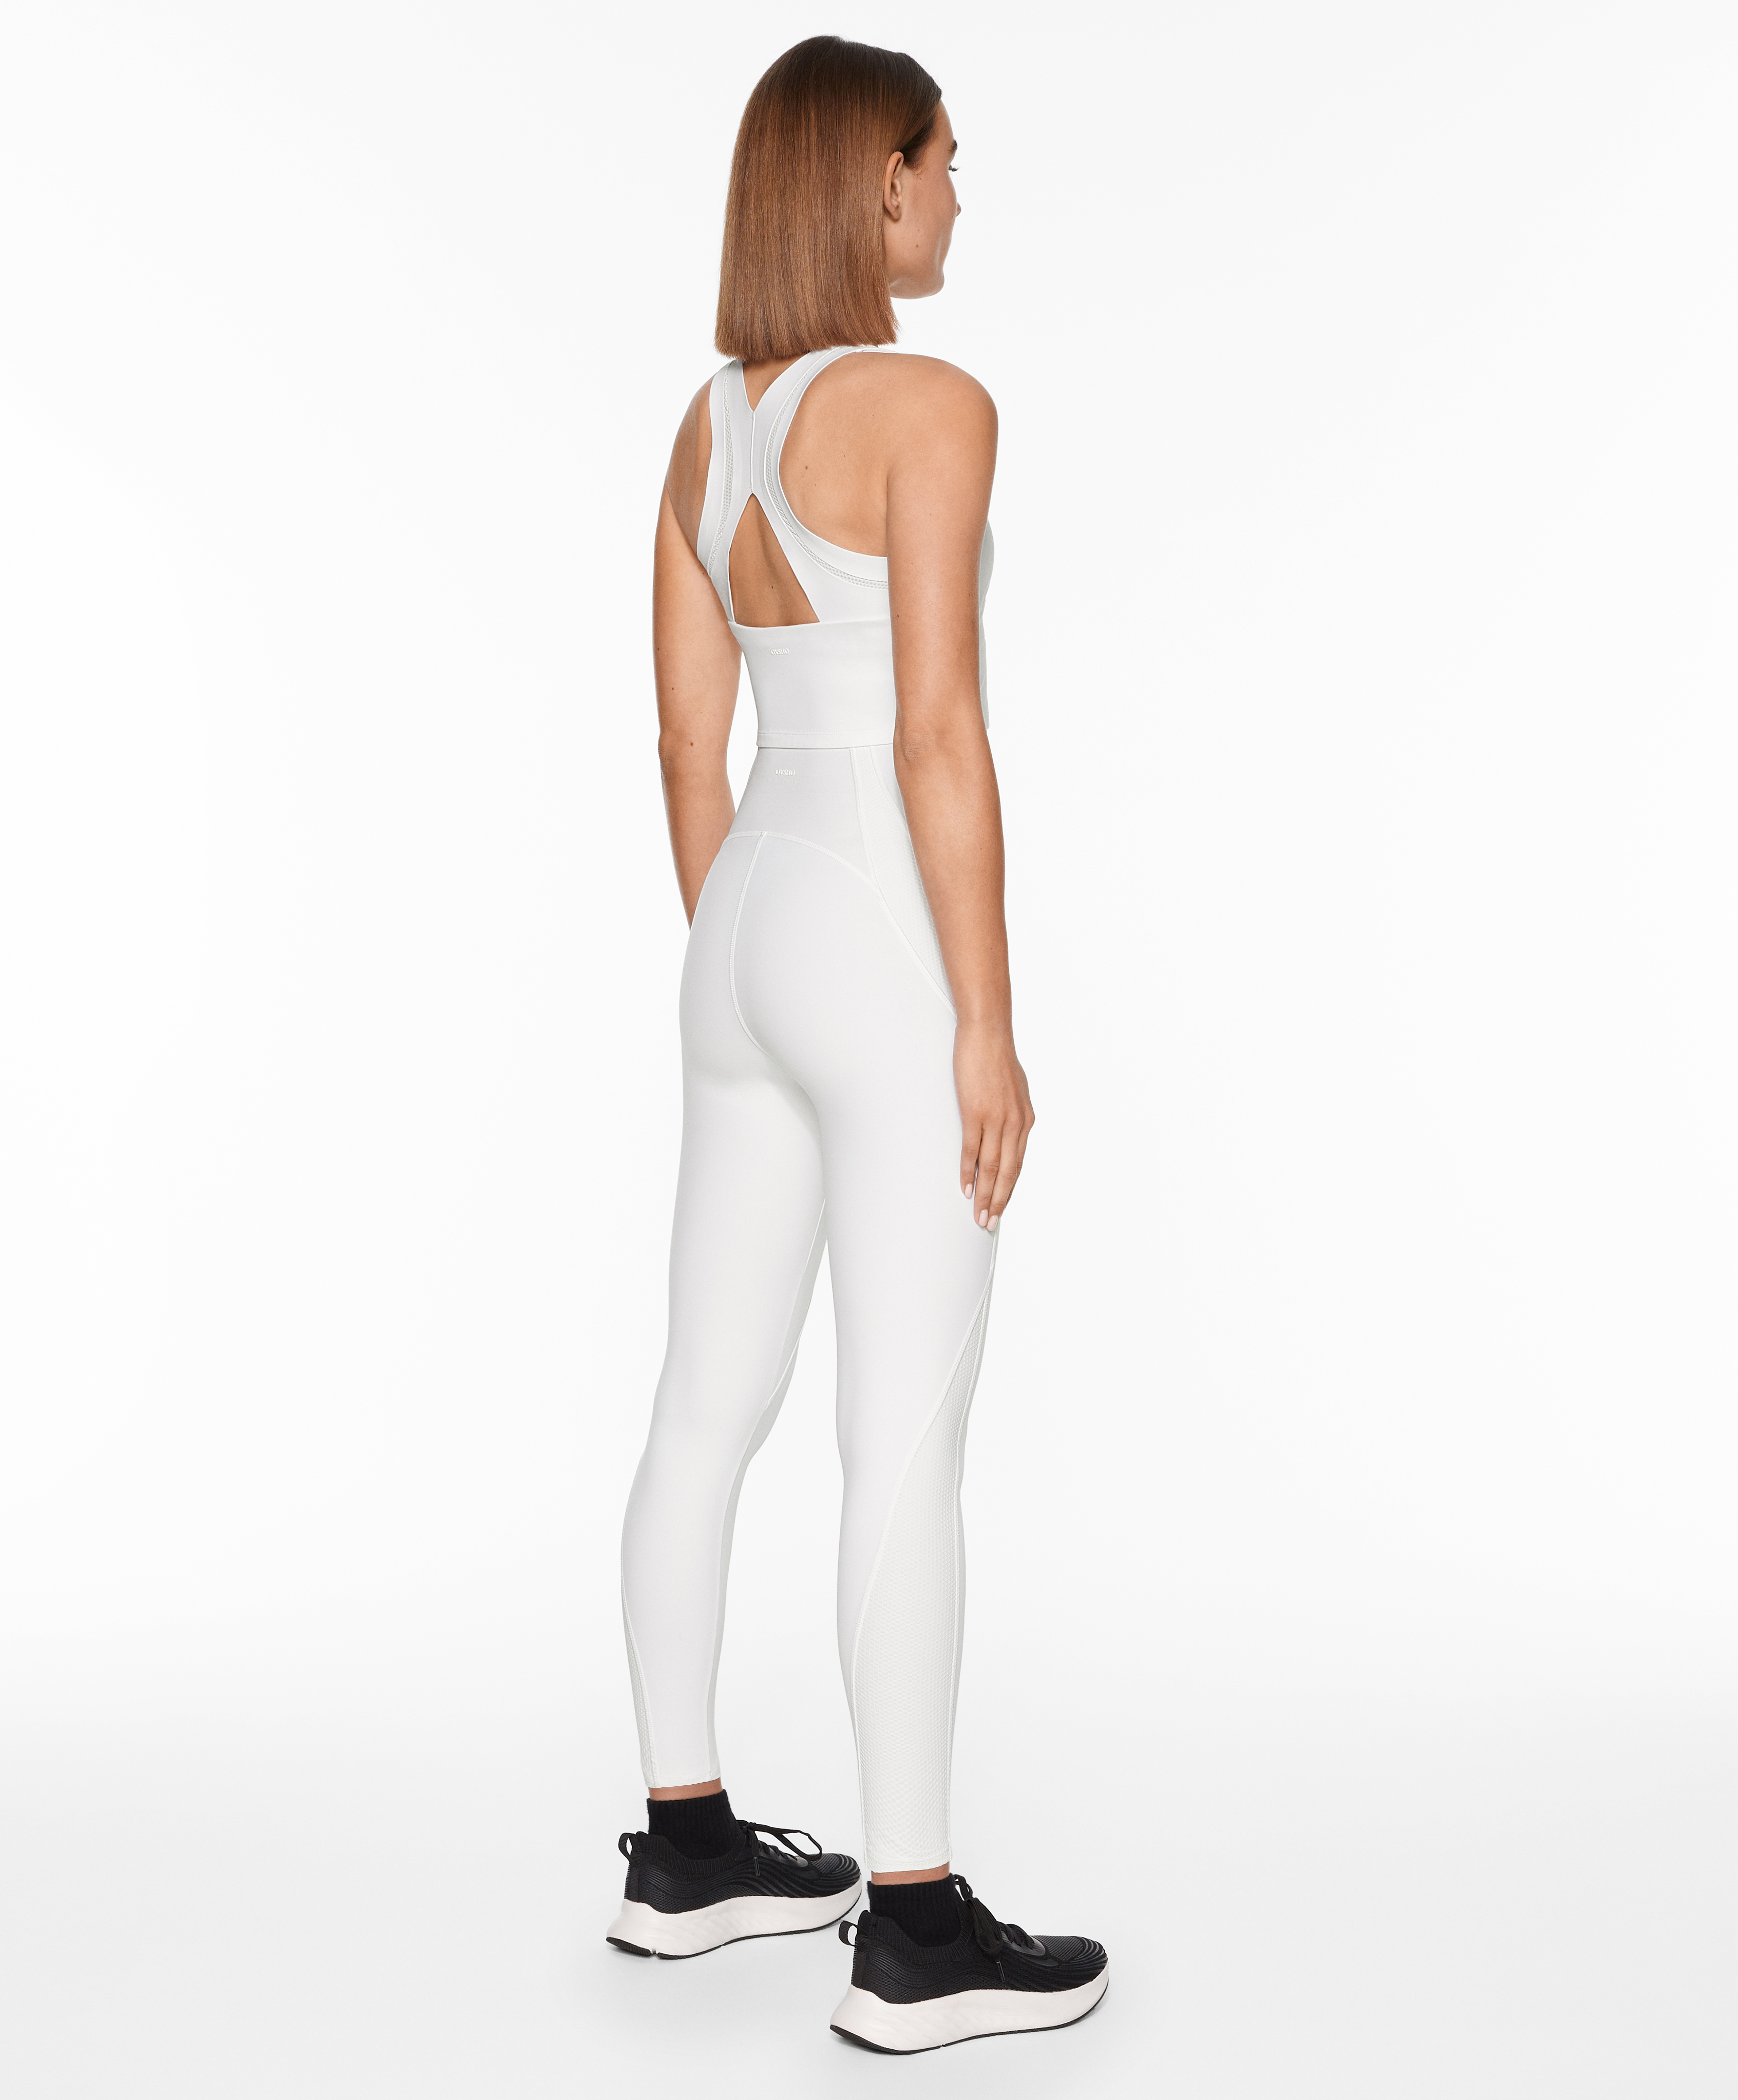 ZELOS, Pants & Jumpsuits, Zelos Rn 314 Active Leggings Workout Yoga Pants  Medium White Gray